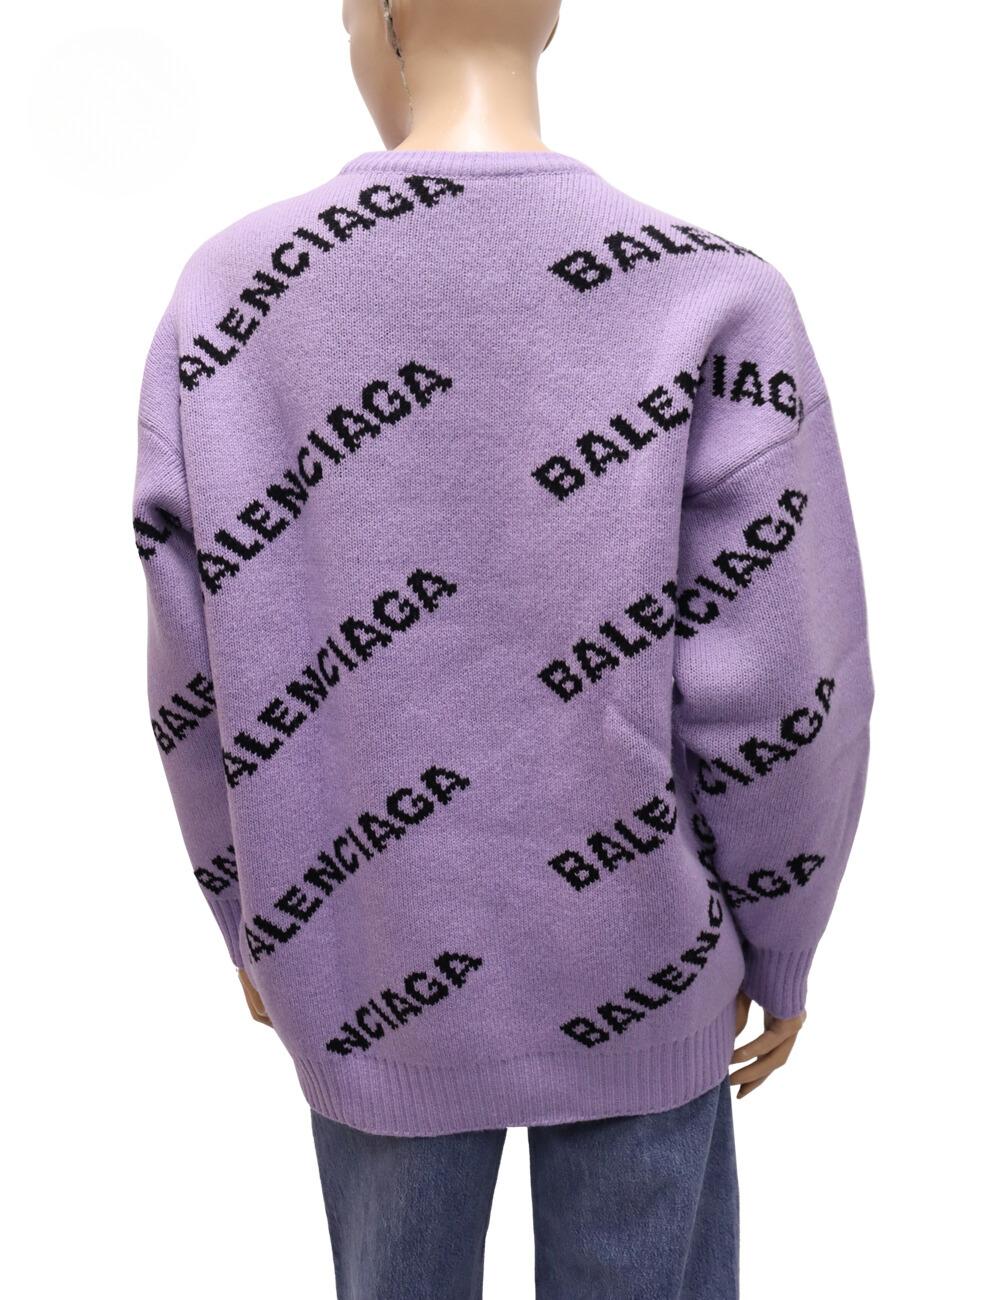 Balenciaga 2019 Collection'S by Demna Gvasalia Bedruckter All-Over-Logo-Pullover, mit langen Ärmeln und Rundhalsausschnitt.

MATERIAL:  98% Wolle, 1% Elastan, 1% Polyamid
Größe: EU 36 / Klein (Übergrößen-Passform)
Oberweite: 126cm
Taille: